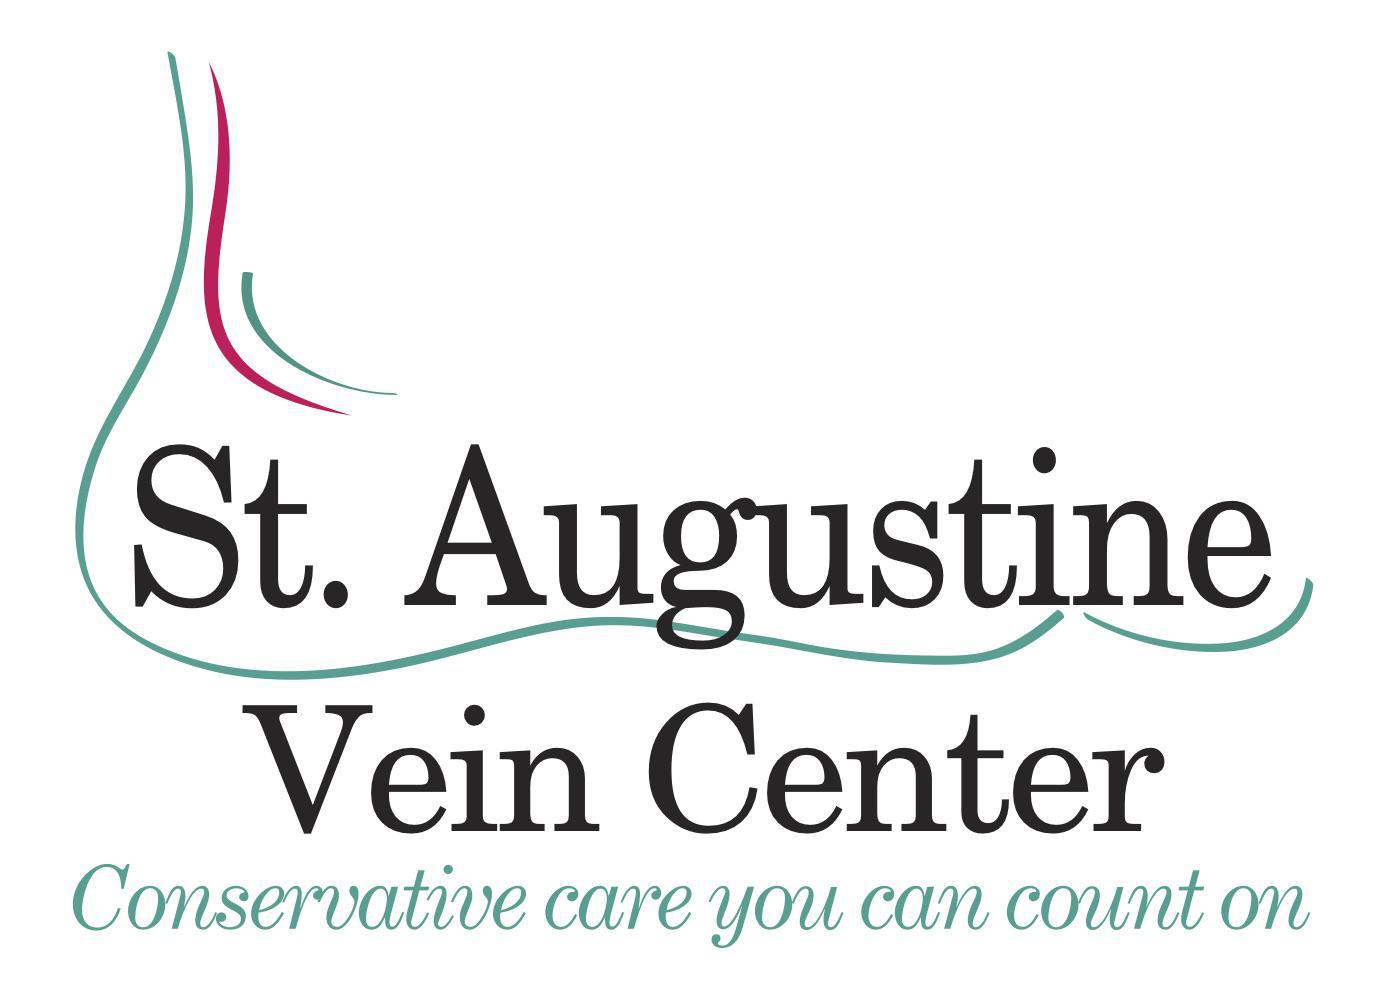 St. Augustine Vein Center